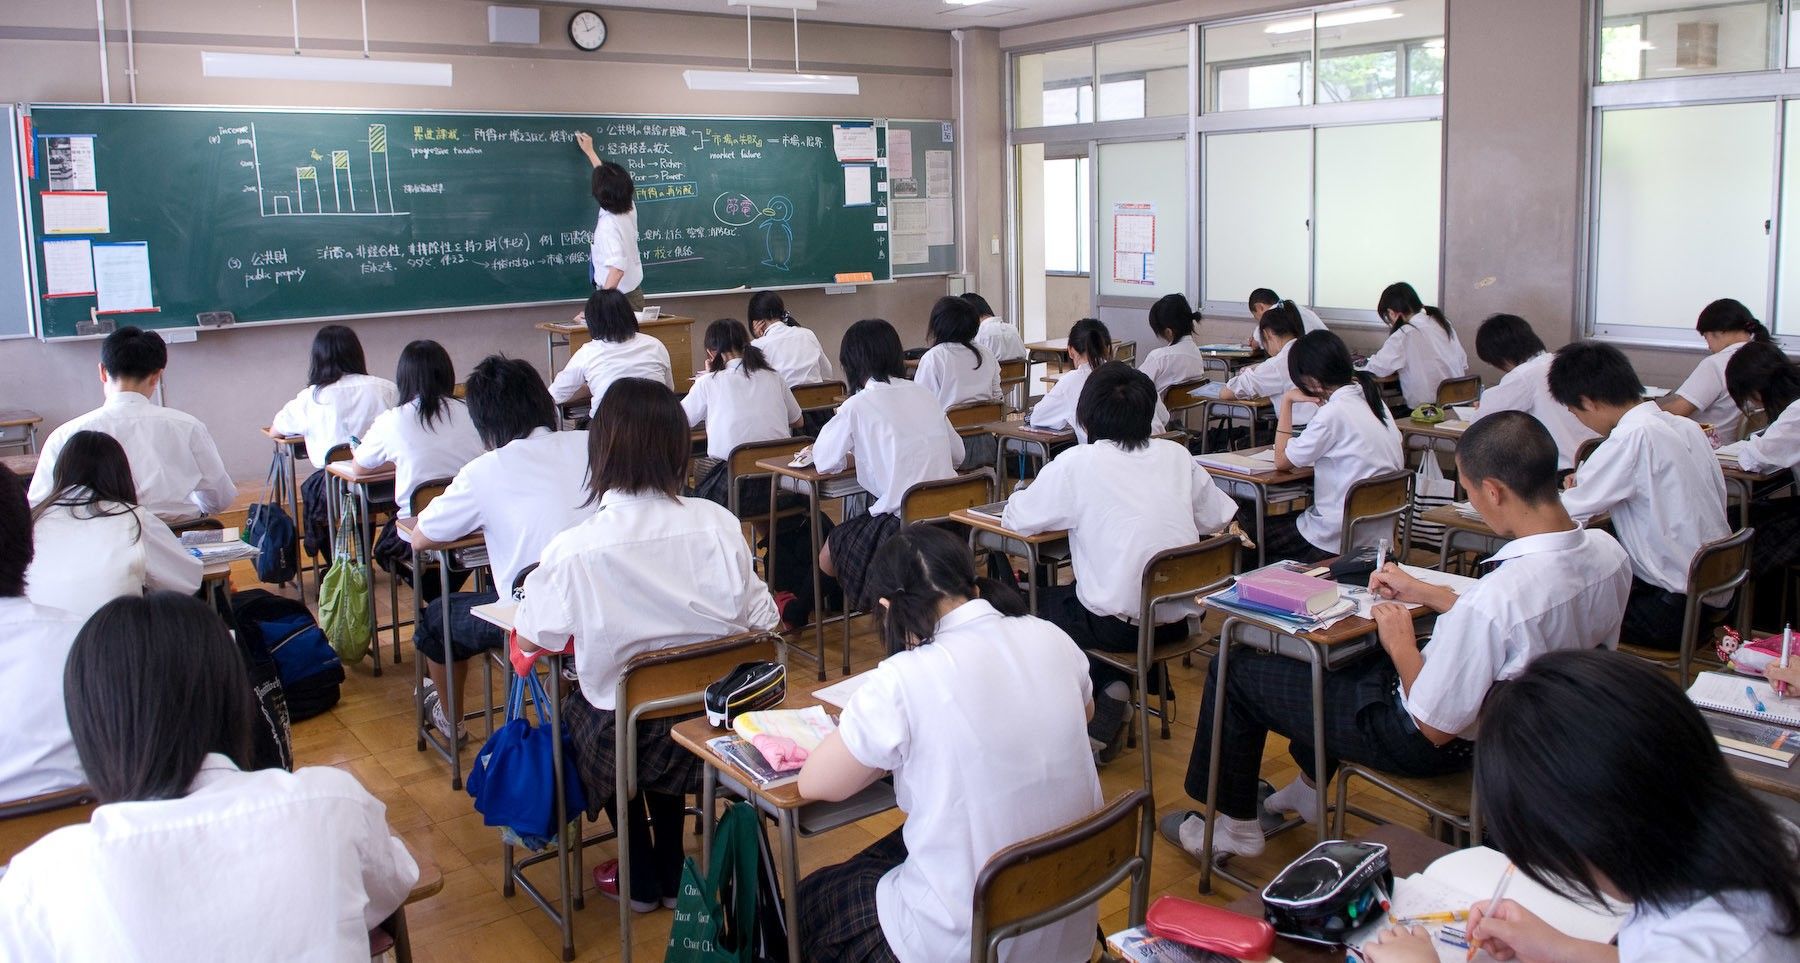 9 Aturan Sekolah Di Jepang Yang Gak Akan Pernah Ada Di Indonesia